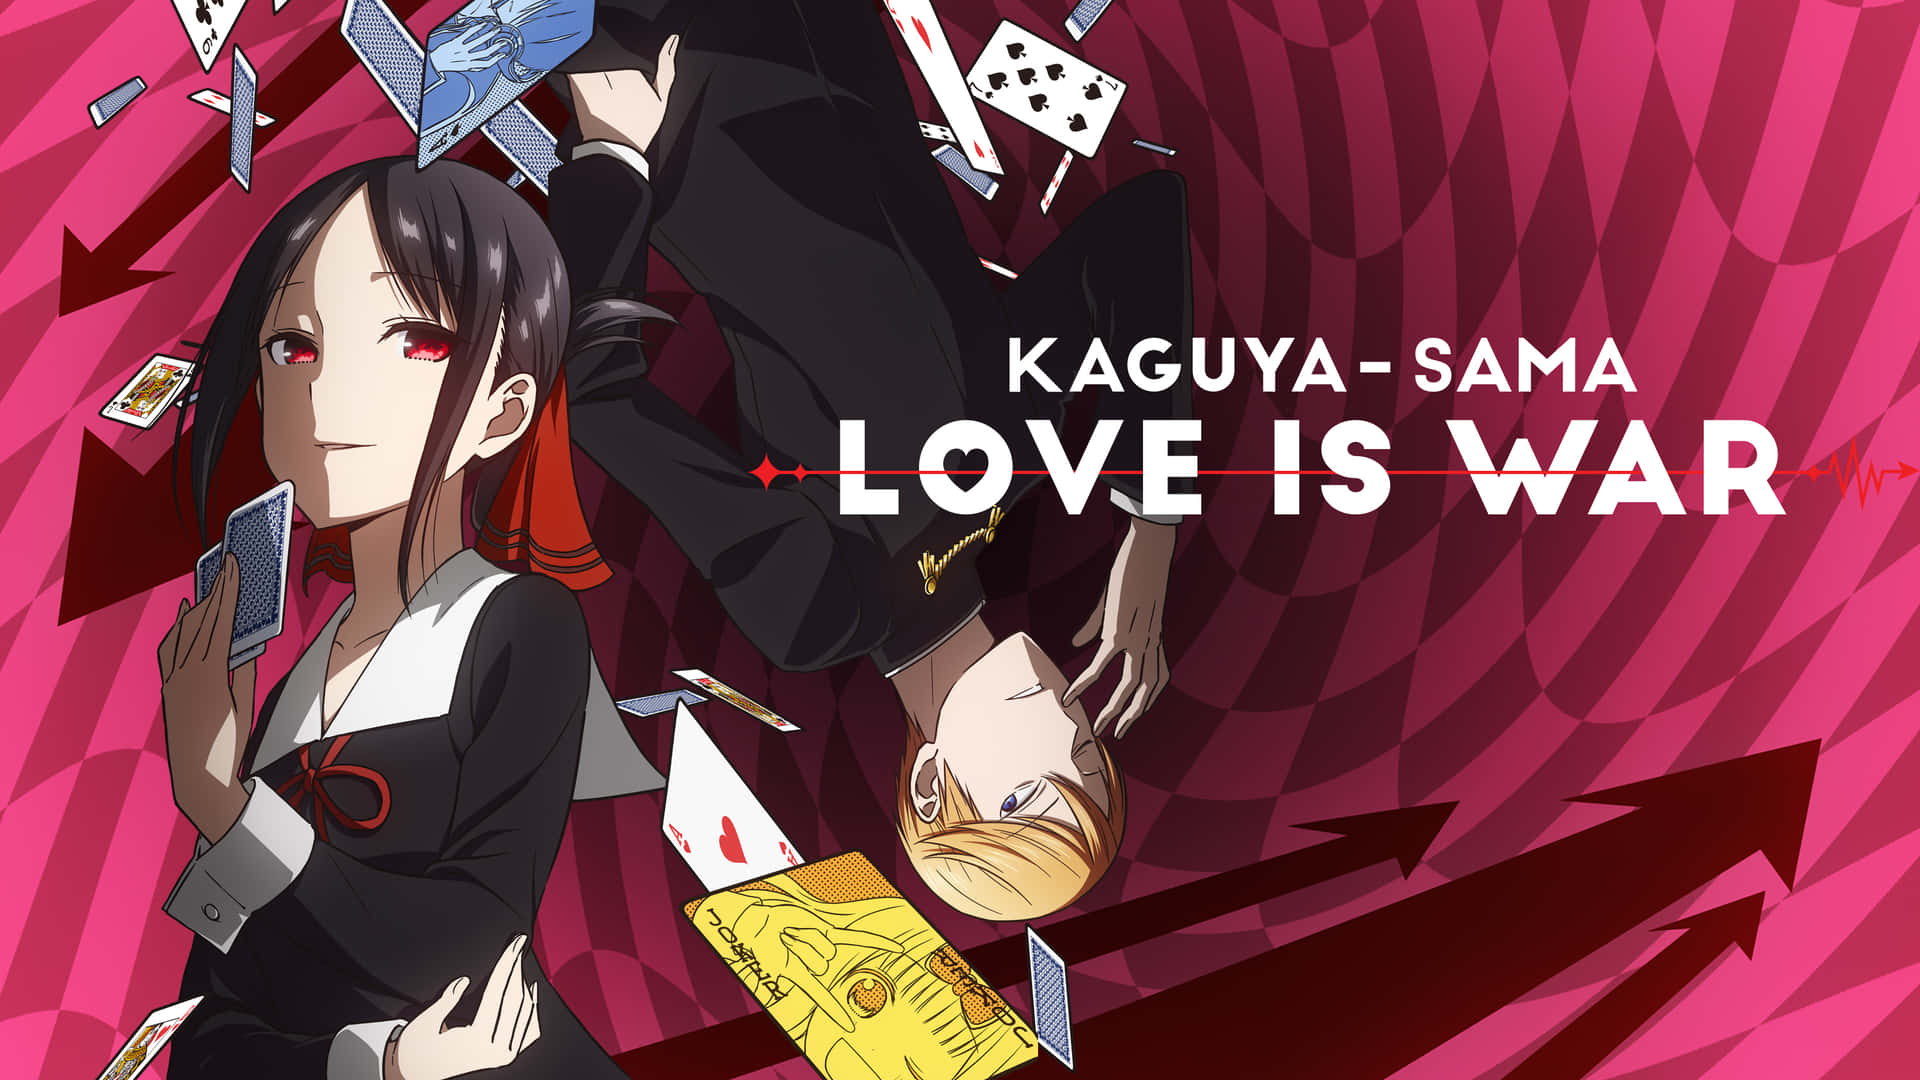 Fondos De Kaguya Sama Love Is War